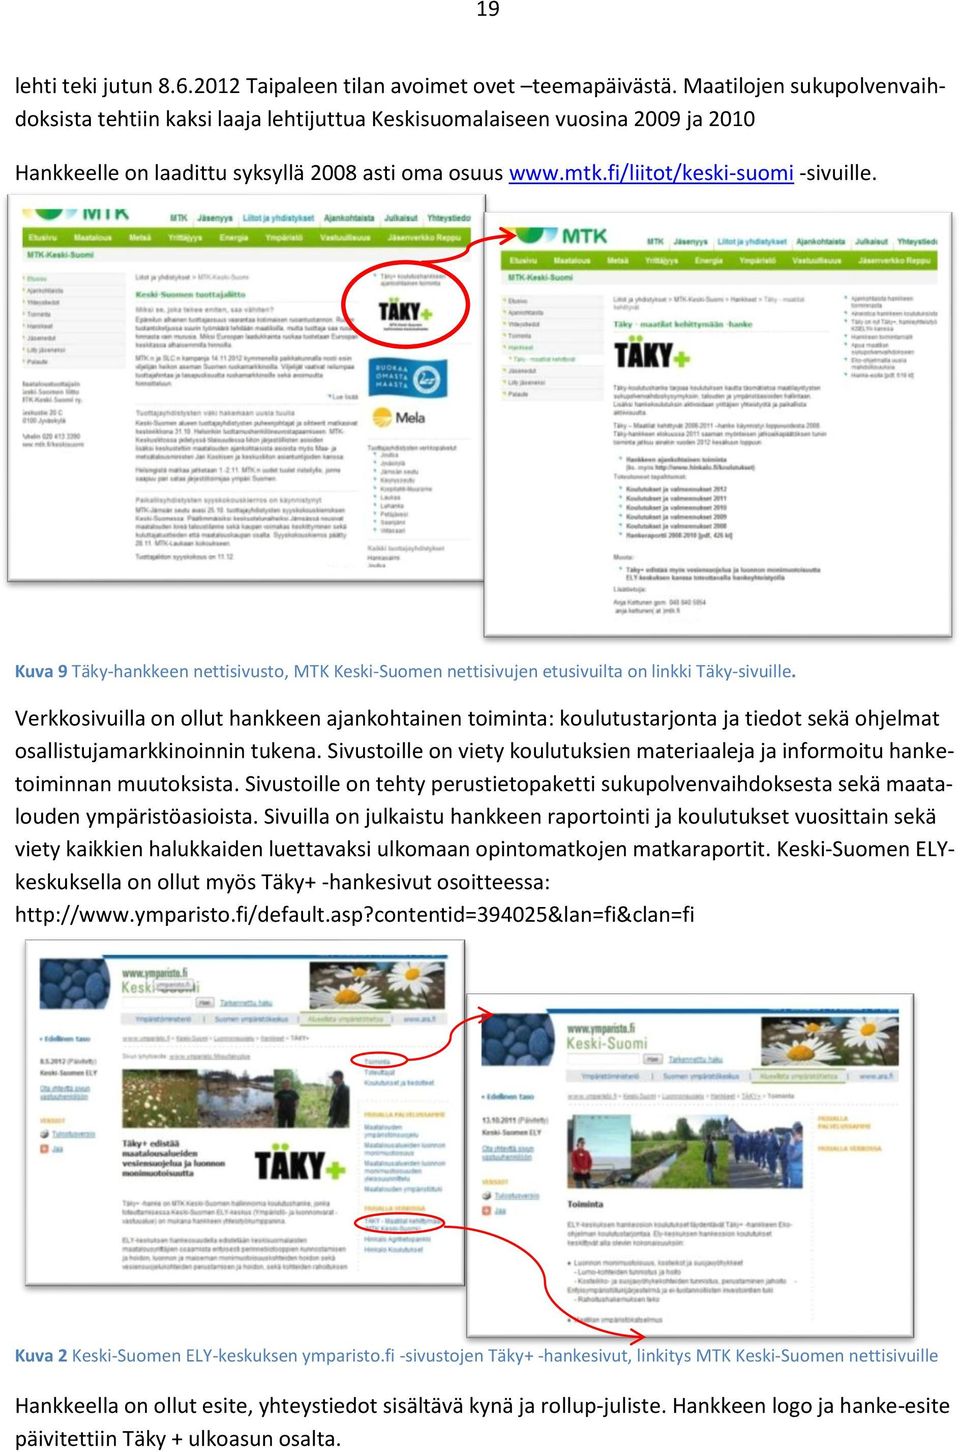 Kuva 9 Täky-hankkeen nettisivusto, MTK Keski-Suomen nettisivujen etusivuilta on linkki Täky-sivuille.